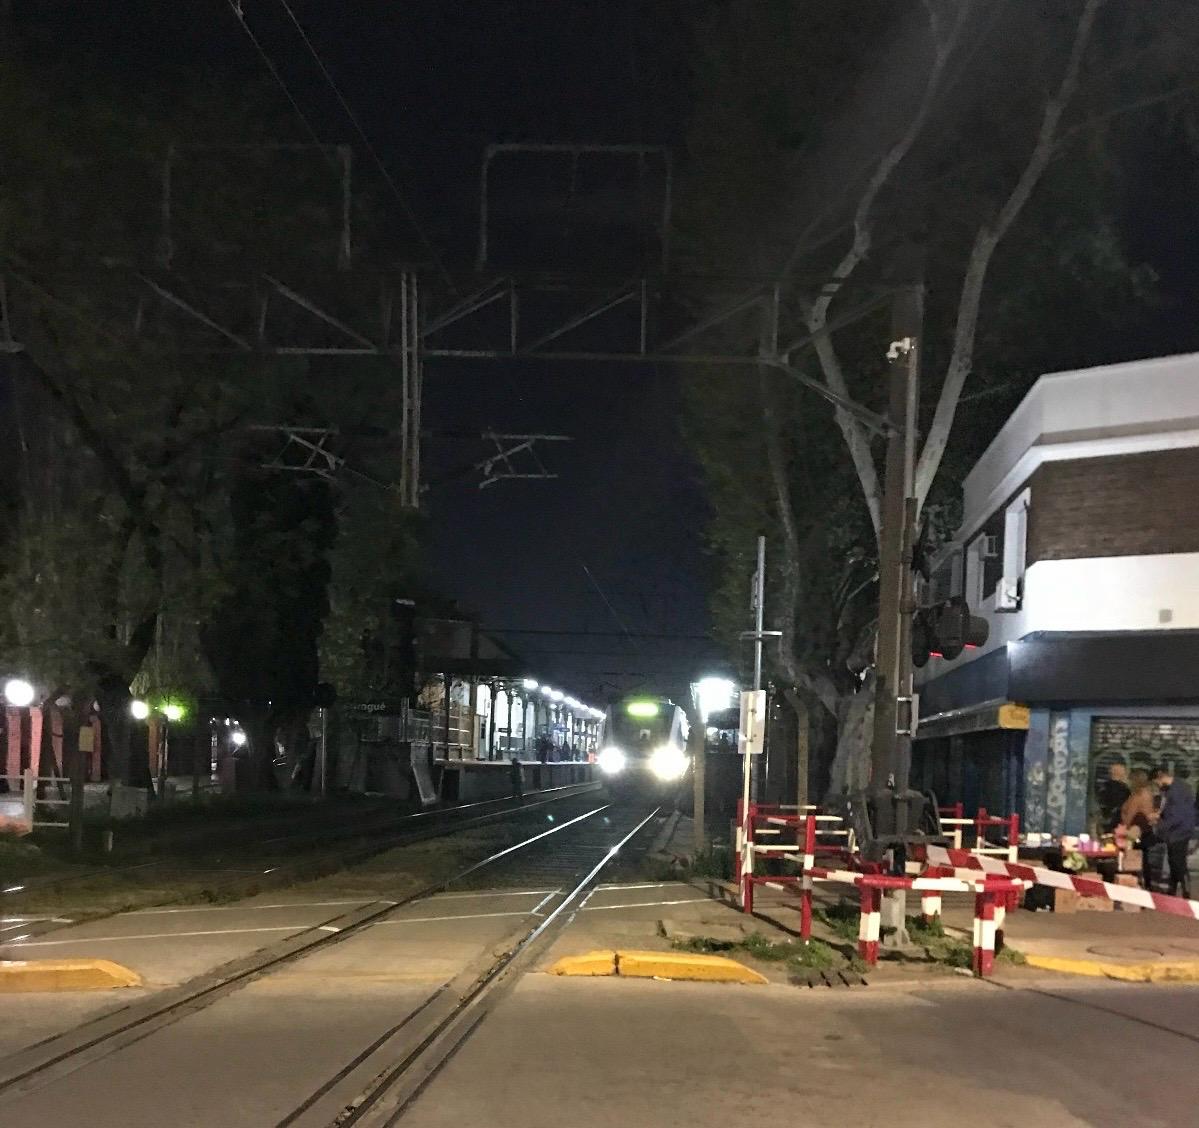 Relevamiento de datos para el programa de conectividad urbana - Cruces Ferroviarios a Distinto Nivel de la Región Metropolitana de Buenos Aires (RMBA)